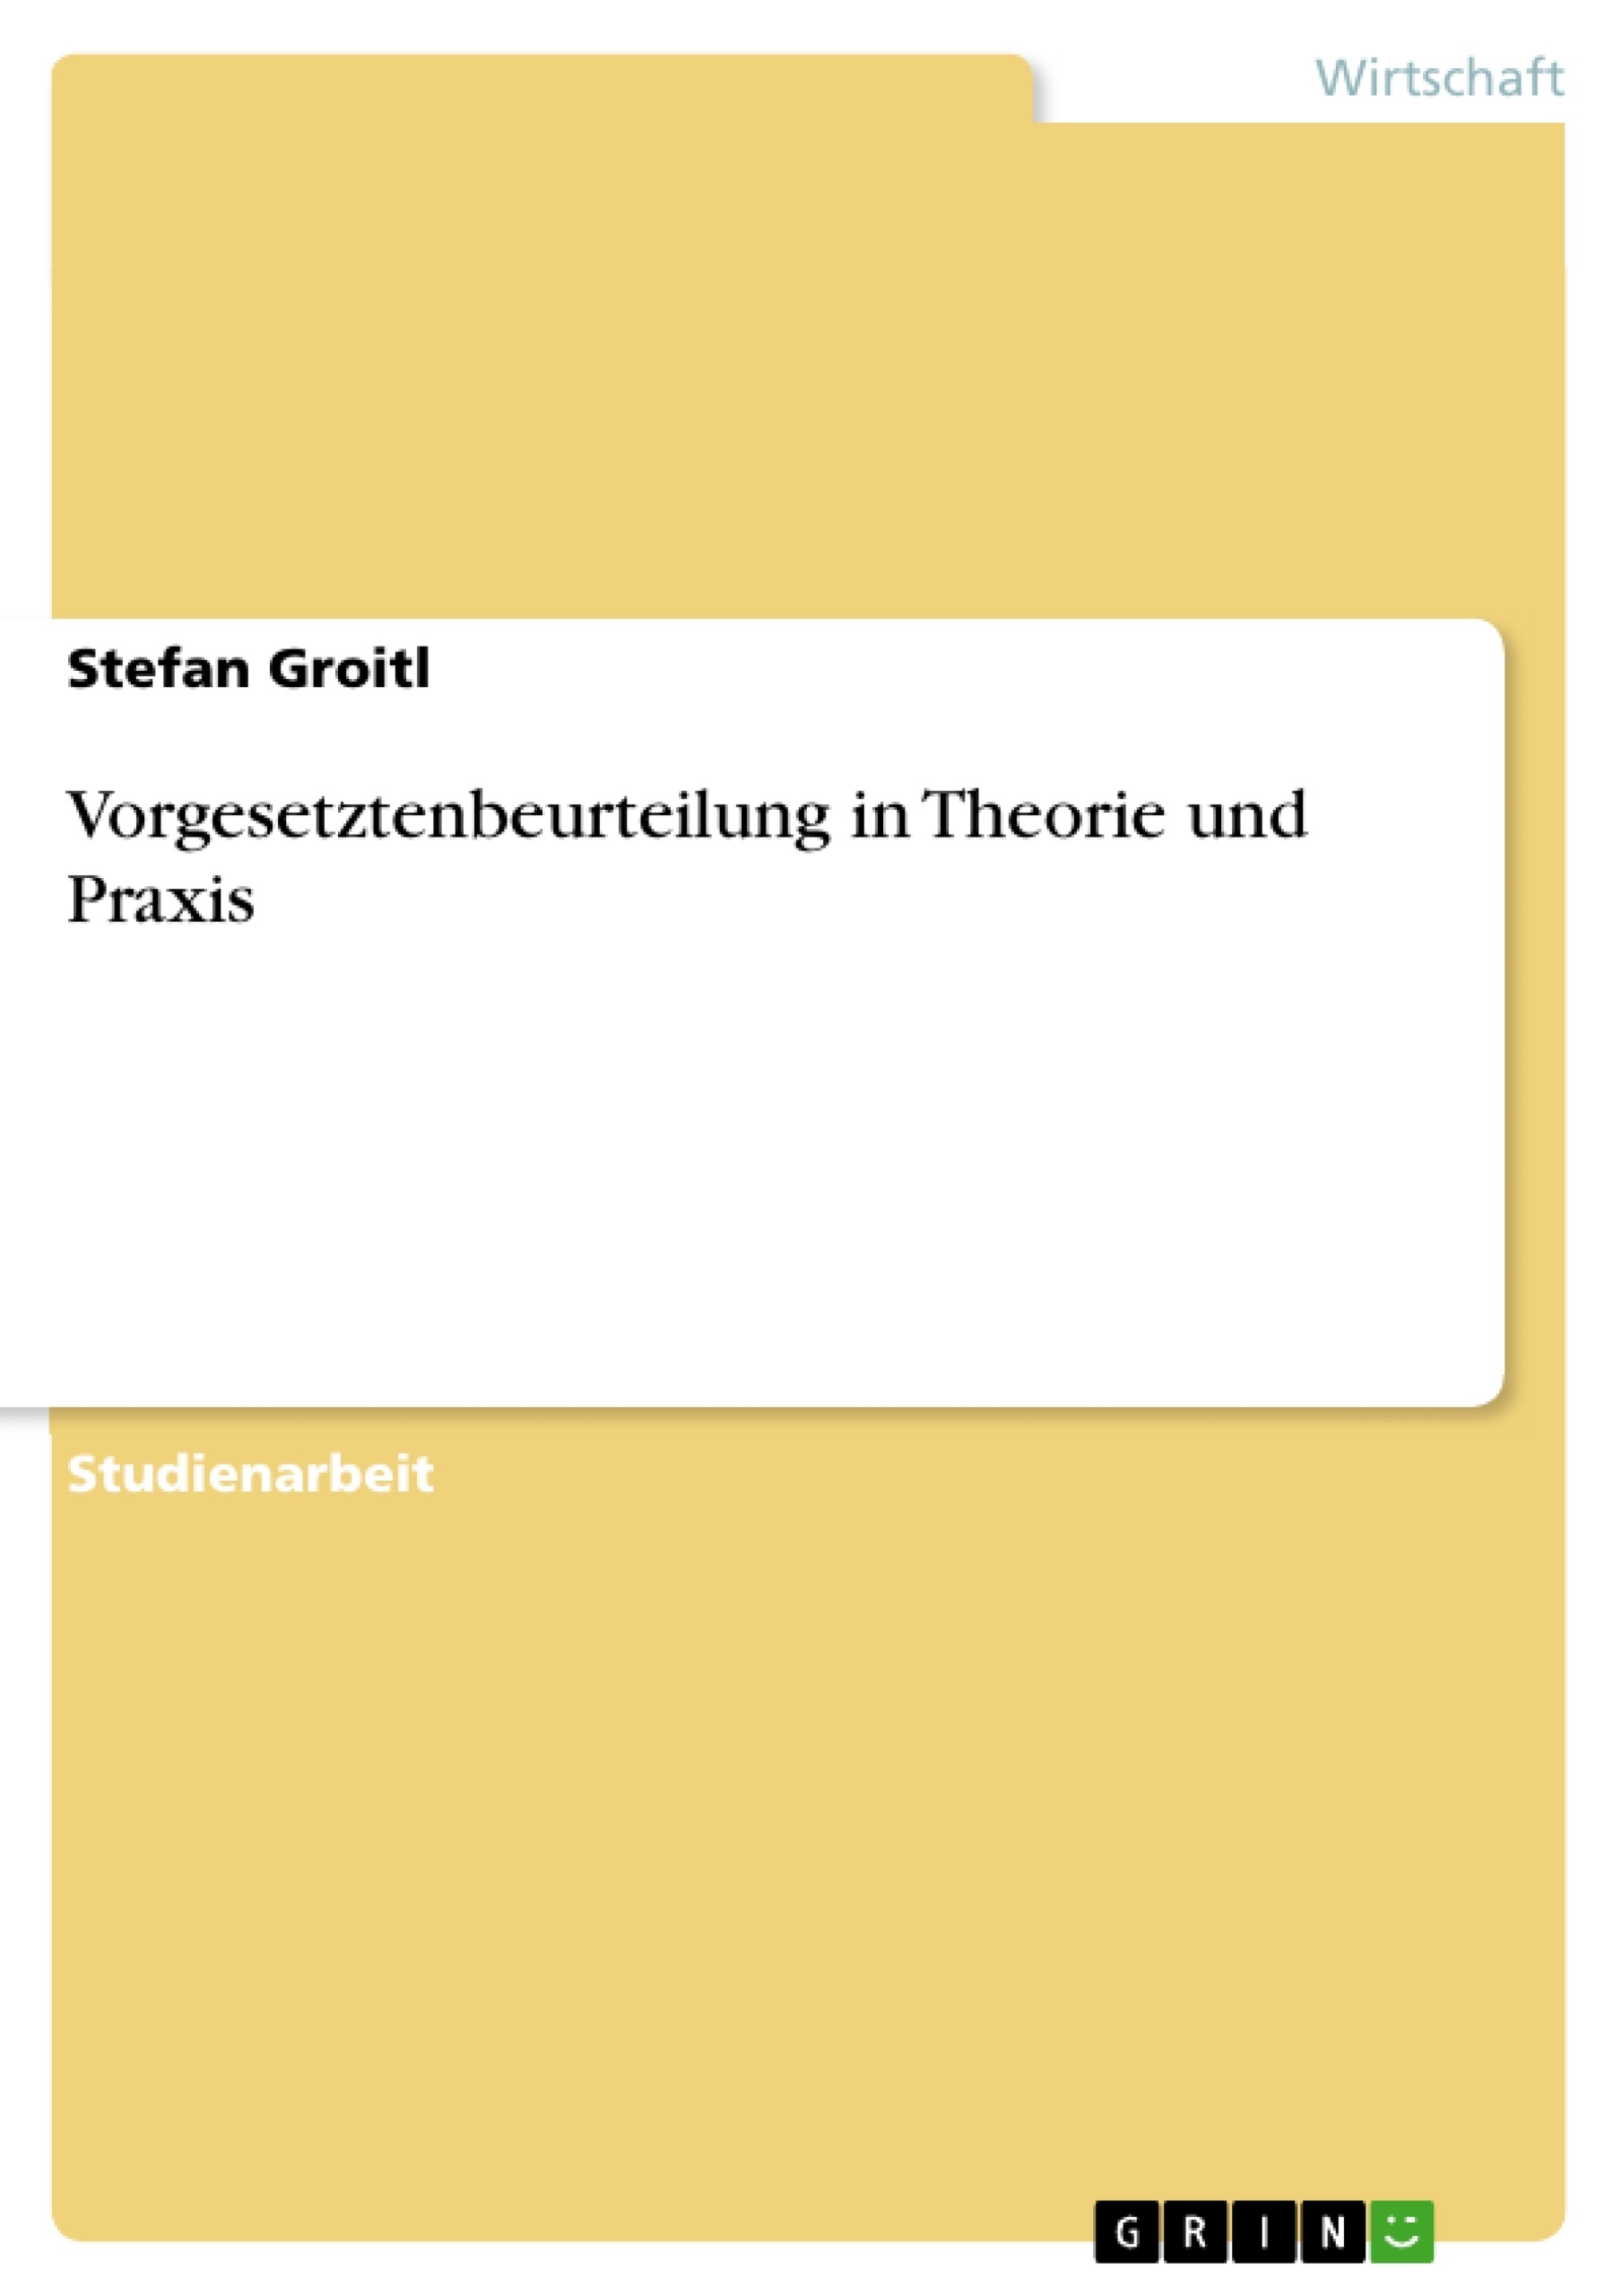 Title: Vorgesetztenbeurteilung in Theorie und Praxis